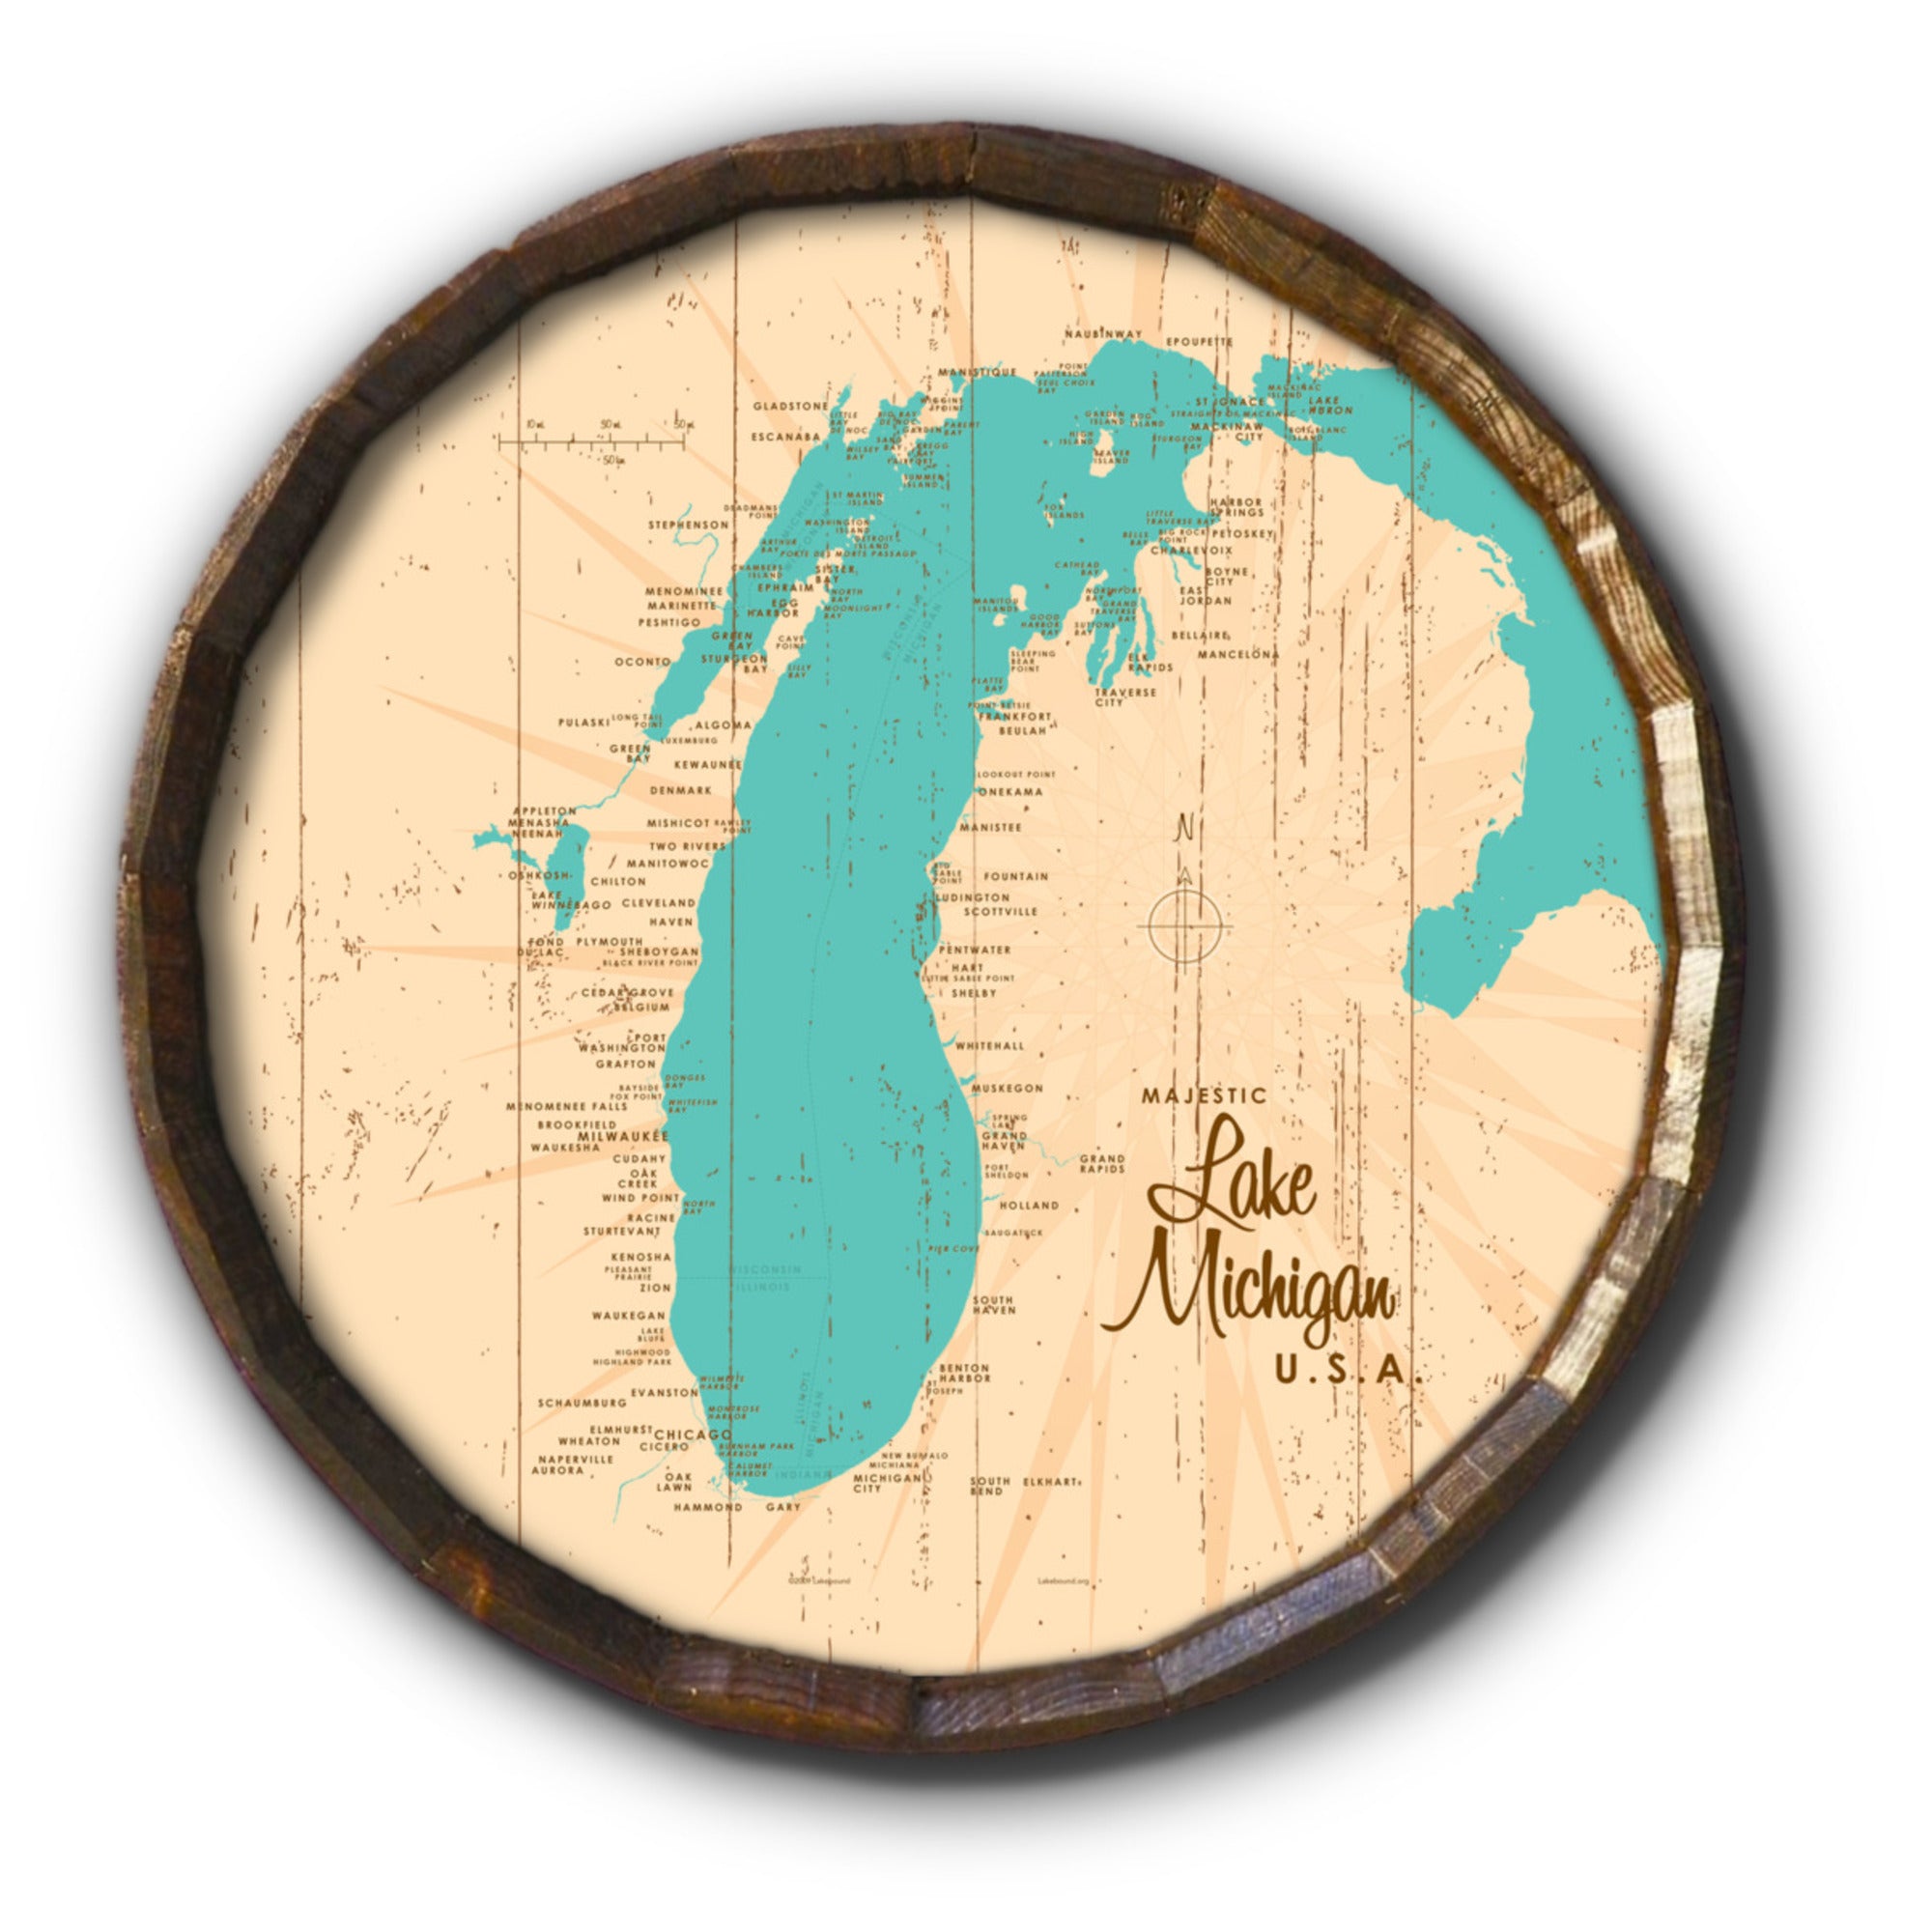 Lake Michigan Michigan, Rustic Barrel End Map Art